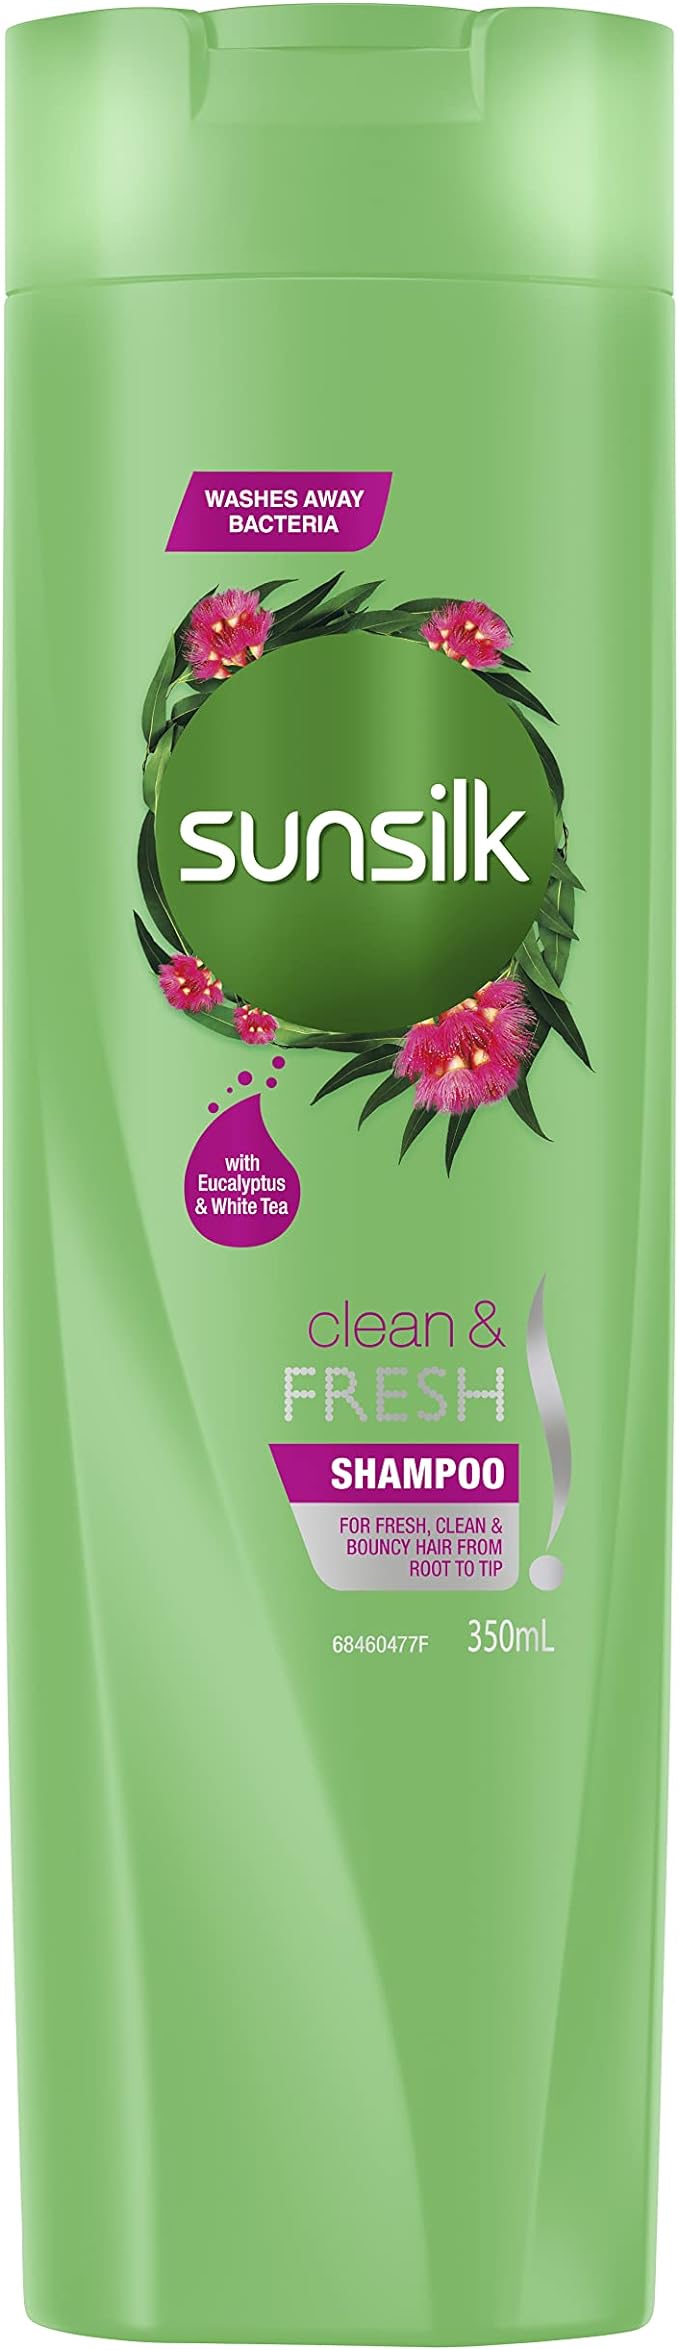 Sunsilk Shampoo Clean & Fresh 350ml